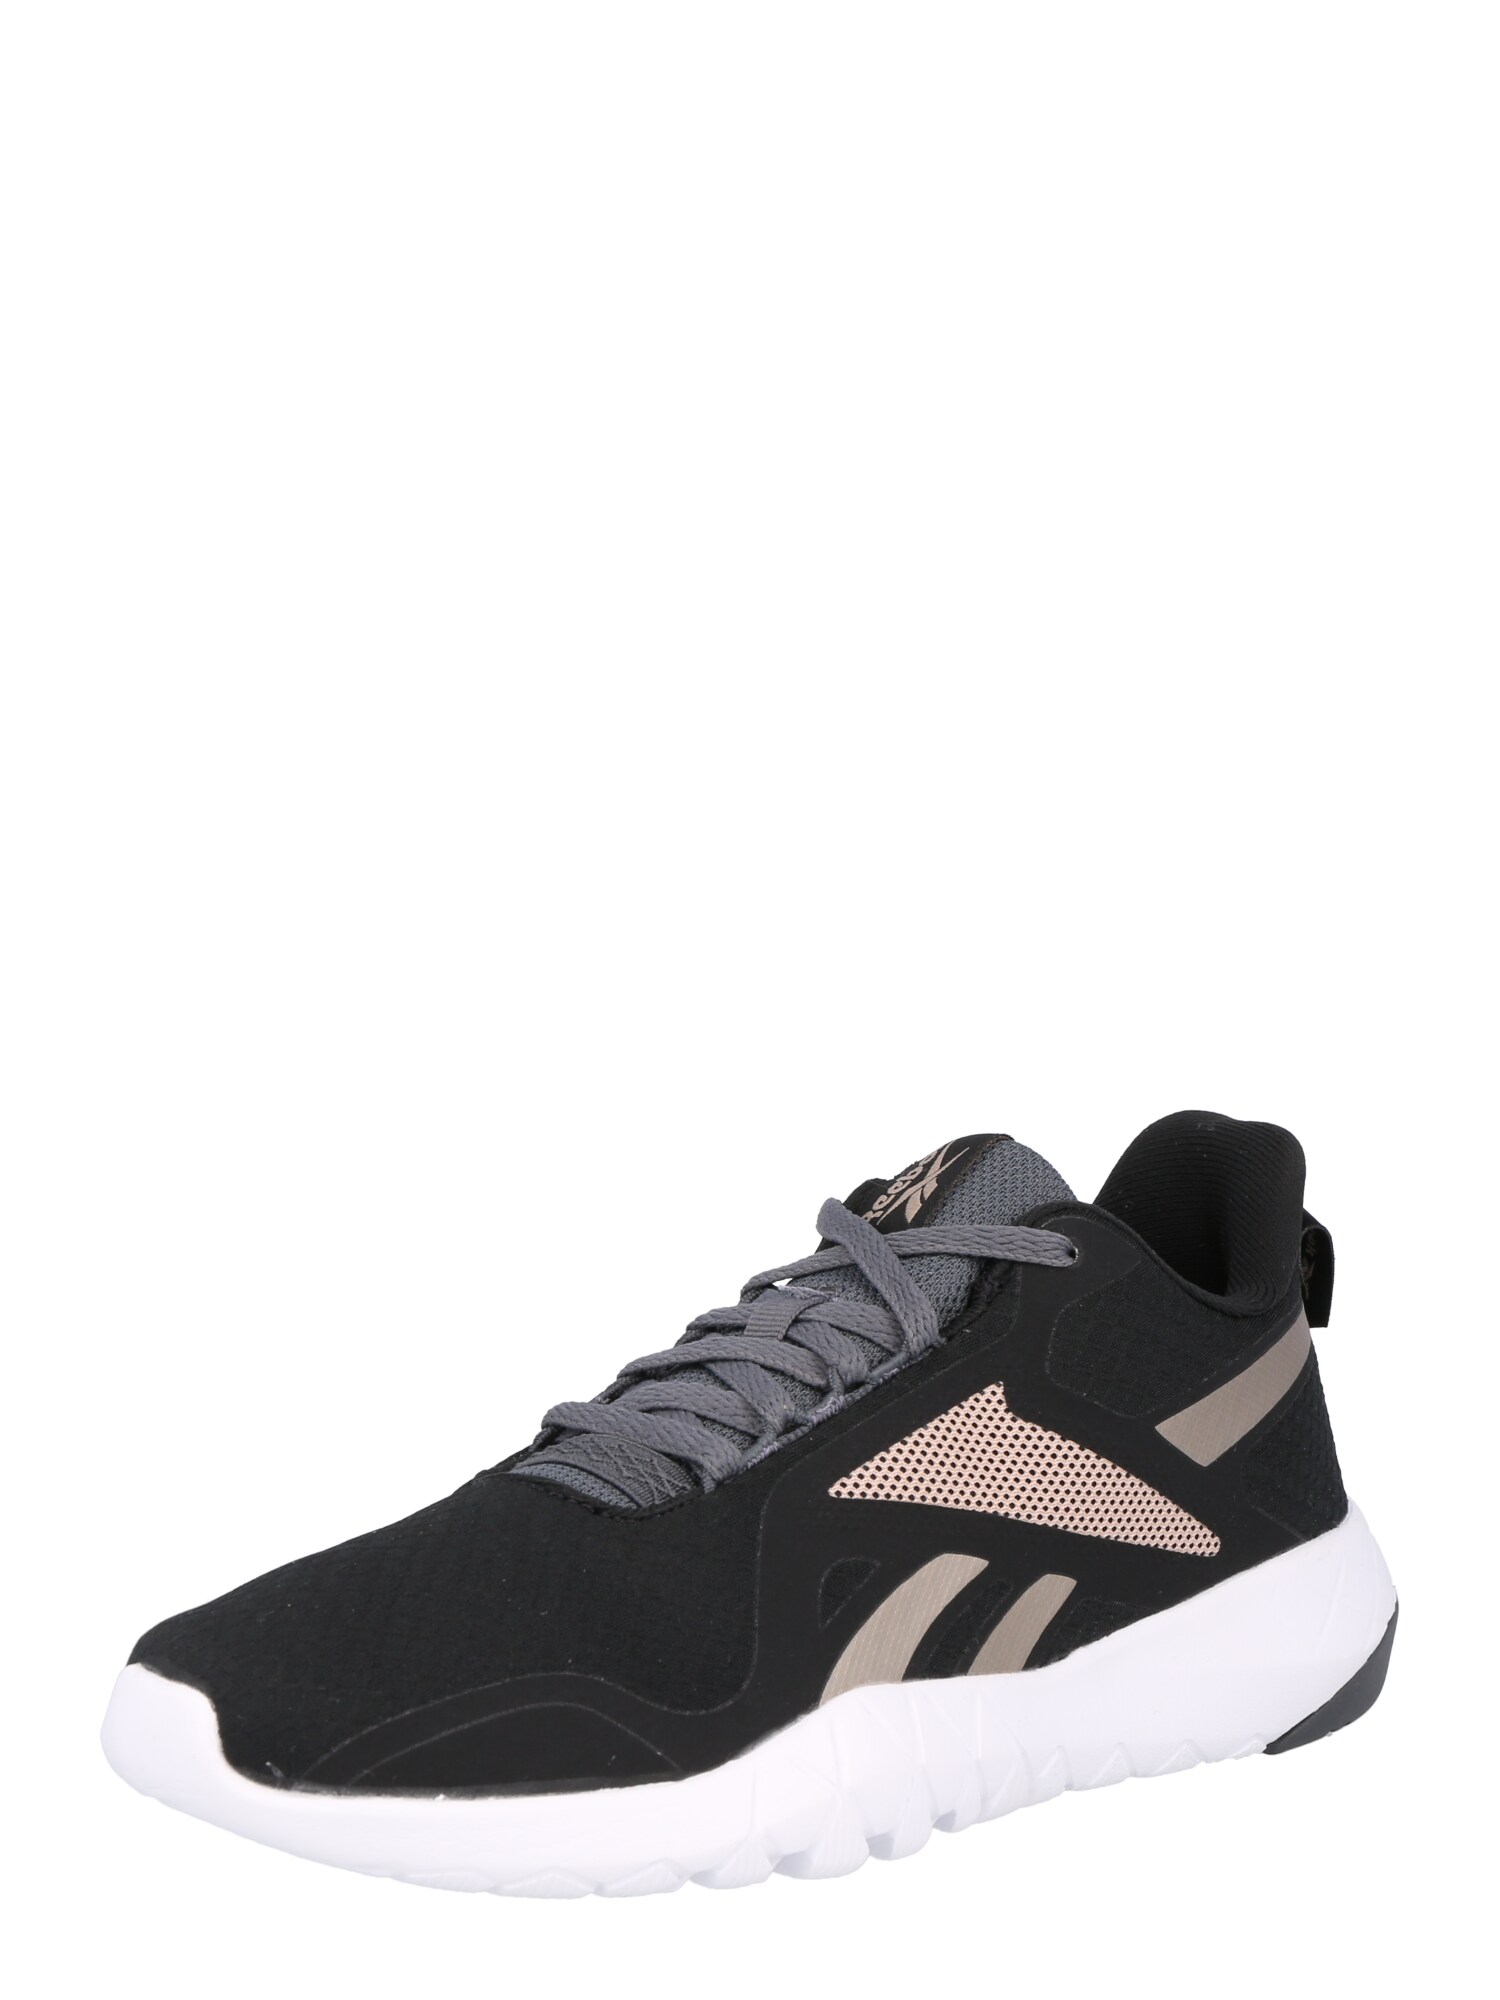 Reebok Sport Bėgimo batai 'Flexagon Force 3' juoda / sidabro pilka / ryškiai rožinė spalva